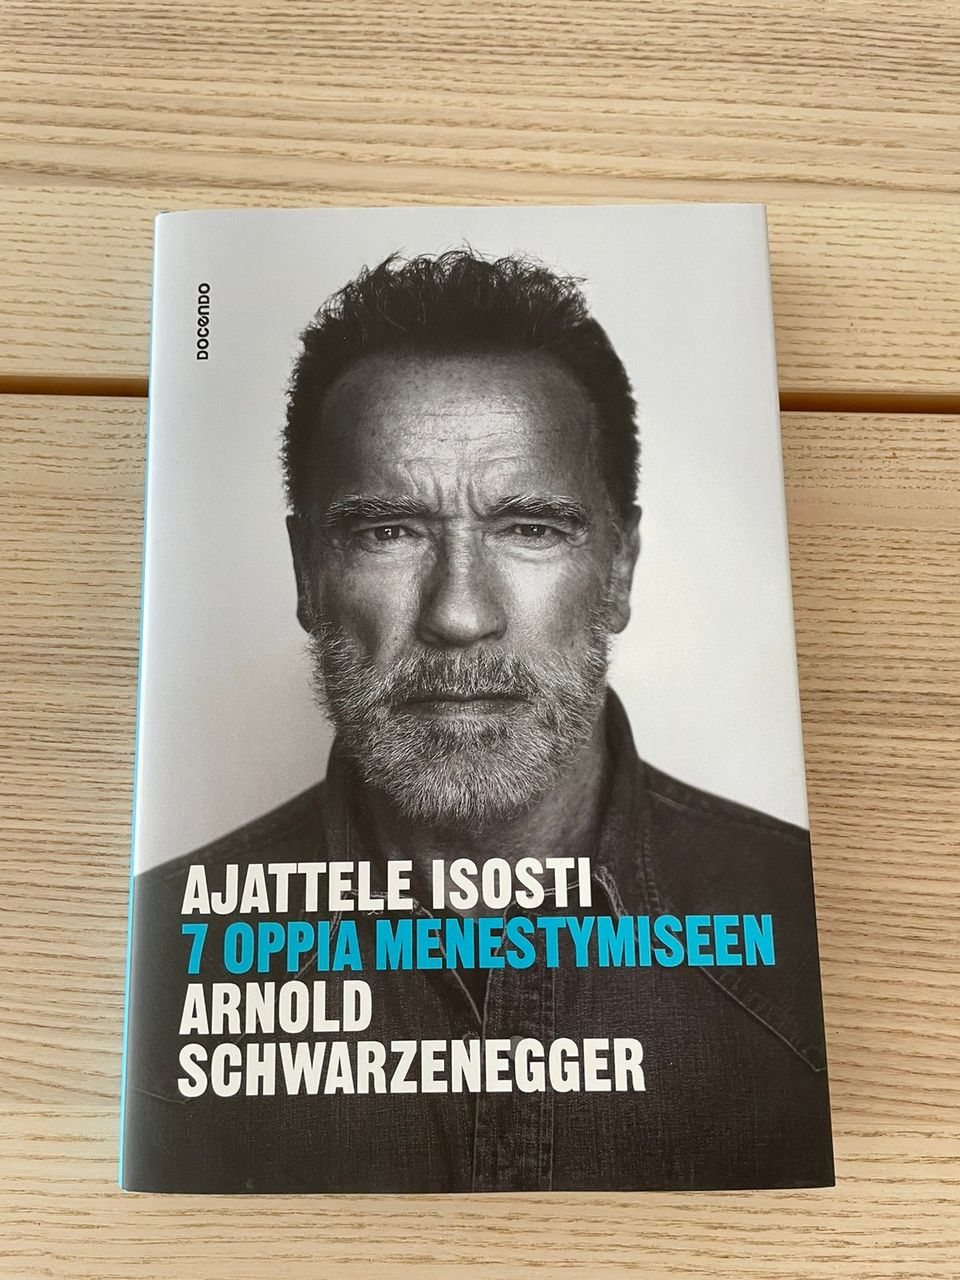 Ajattele isosti - Arnold Schwarzenegger